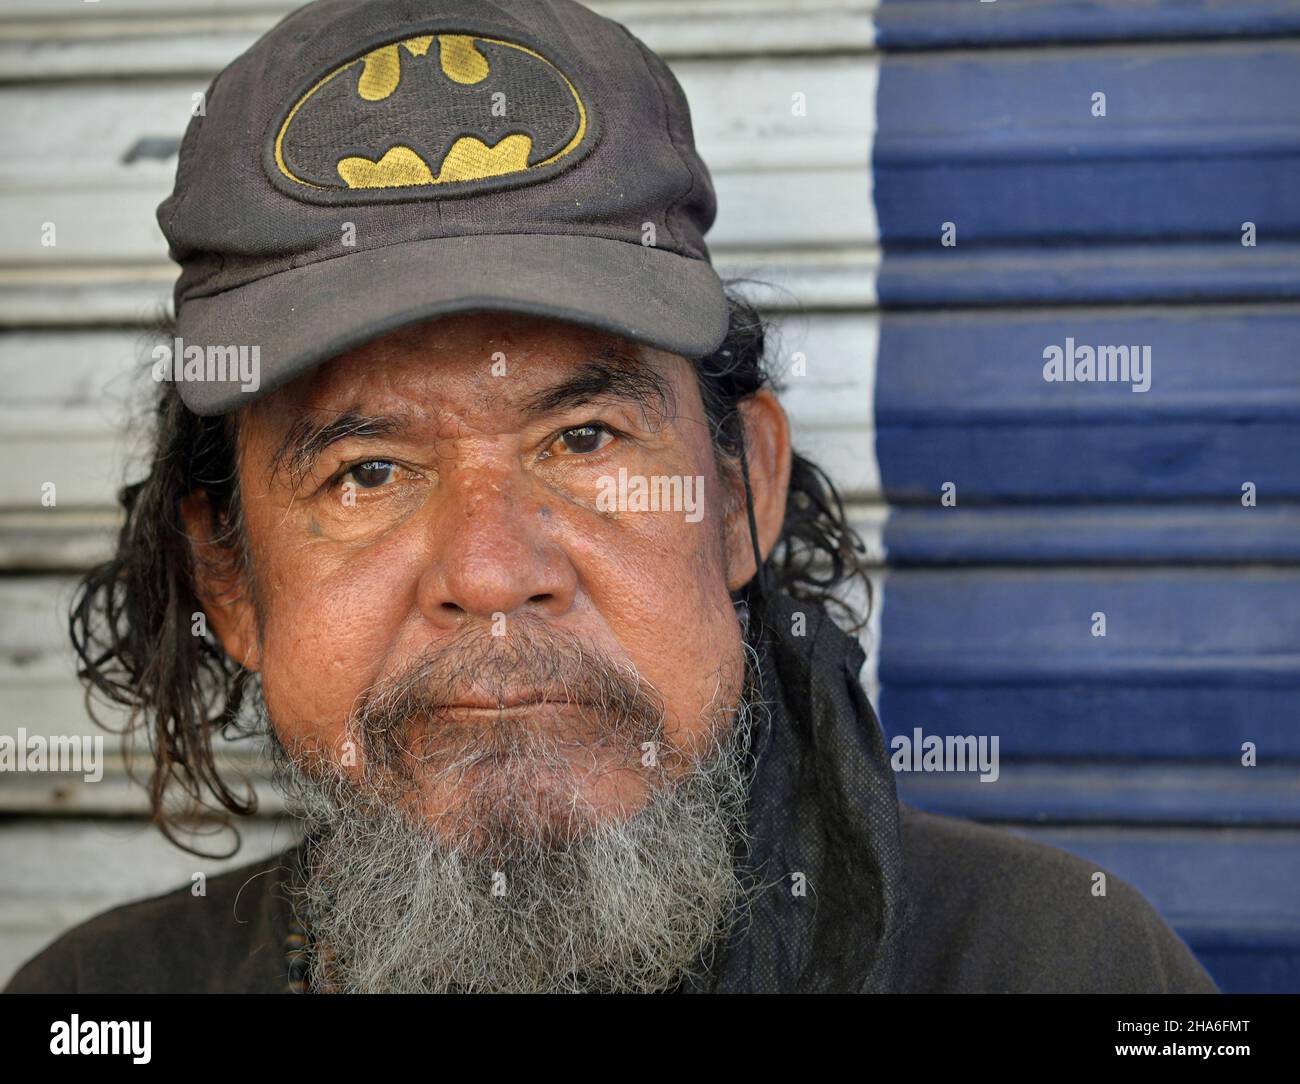 Un homme mexicain âgé et robuste, sans abri, avec une barbe grise et des cheveux en forme de vaisselle, porte une casquette de baseball usée et regarde le spectateur. Banque D'Images